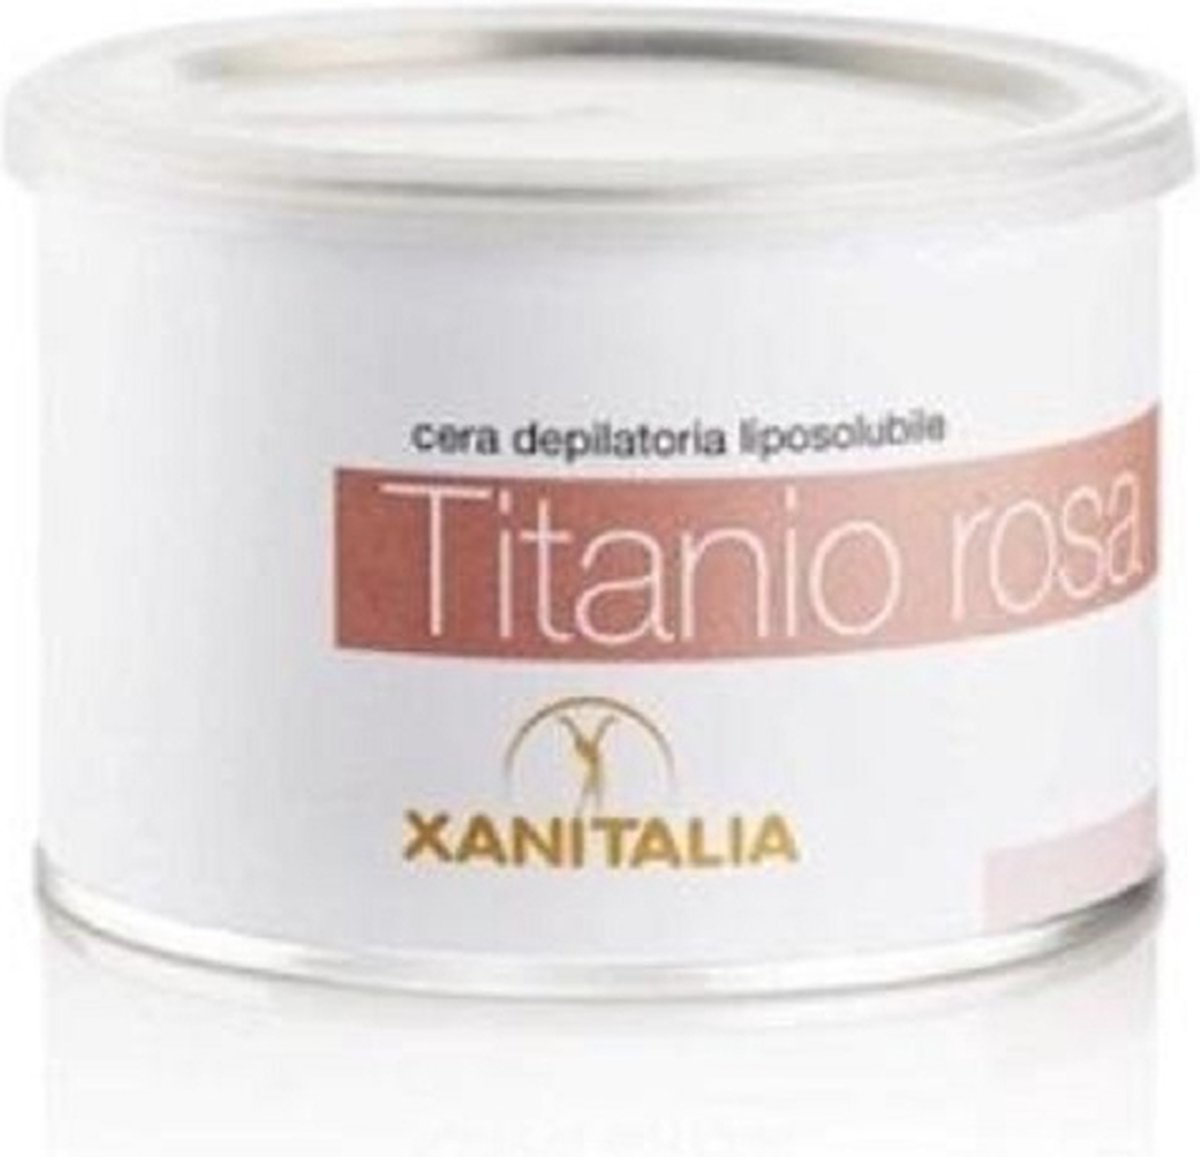 Cera Depilatoria Liposolubile Titanio Rosa Delicate 800ml